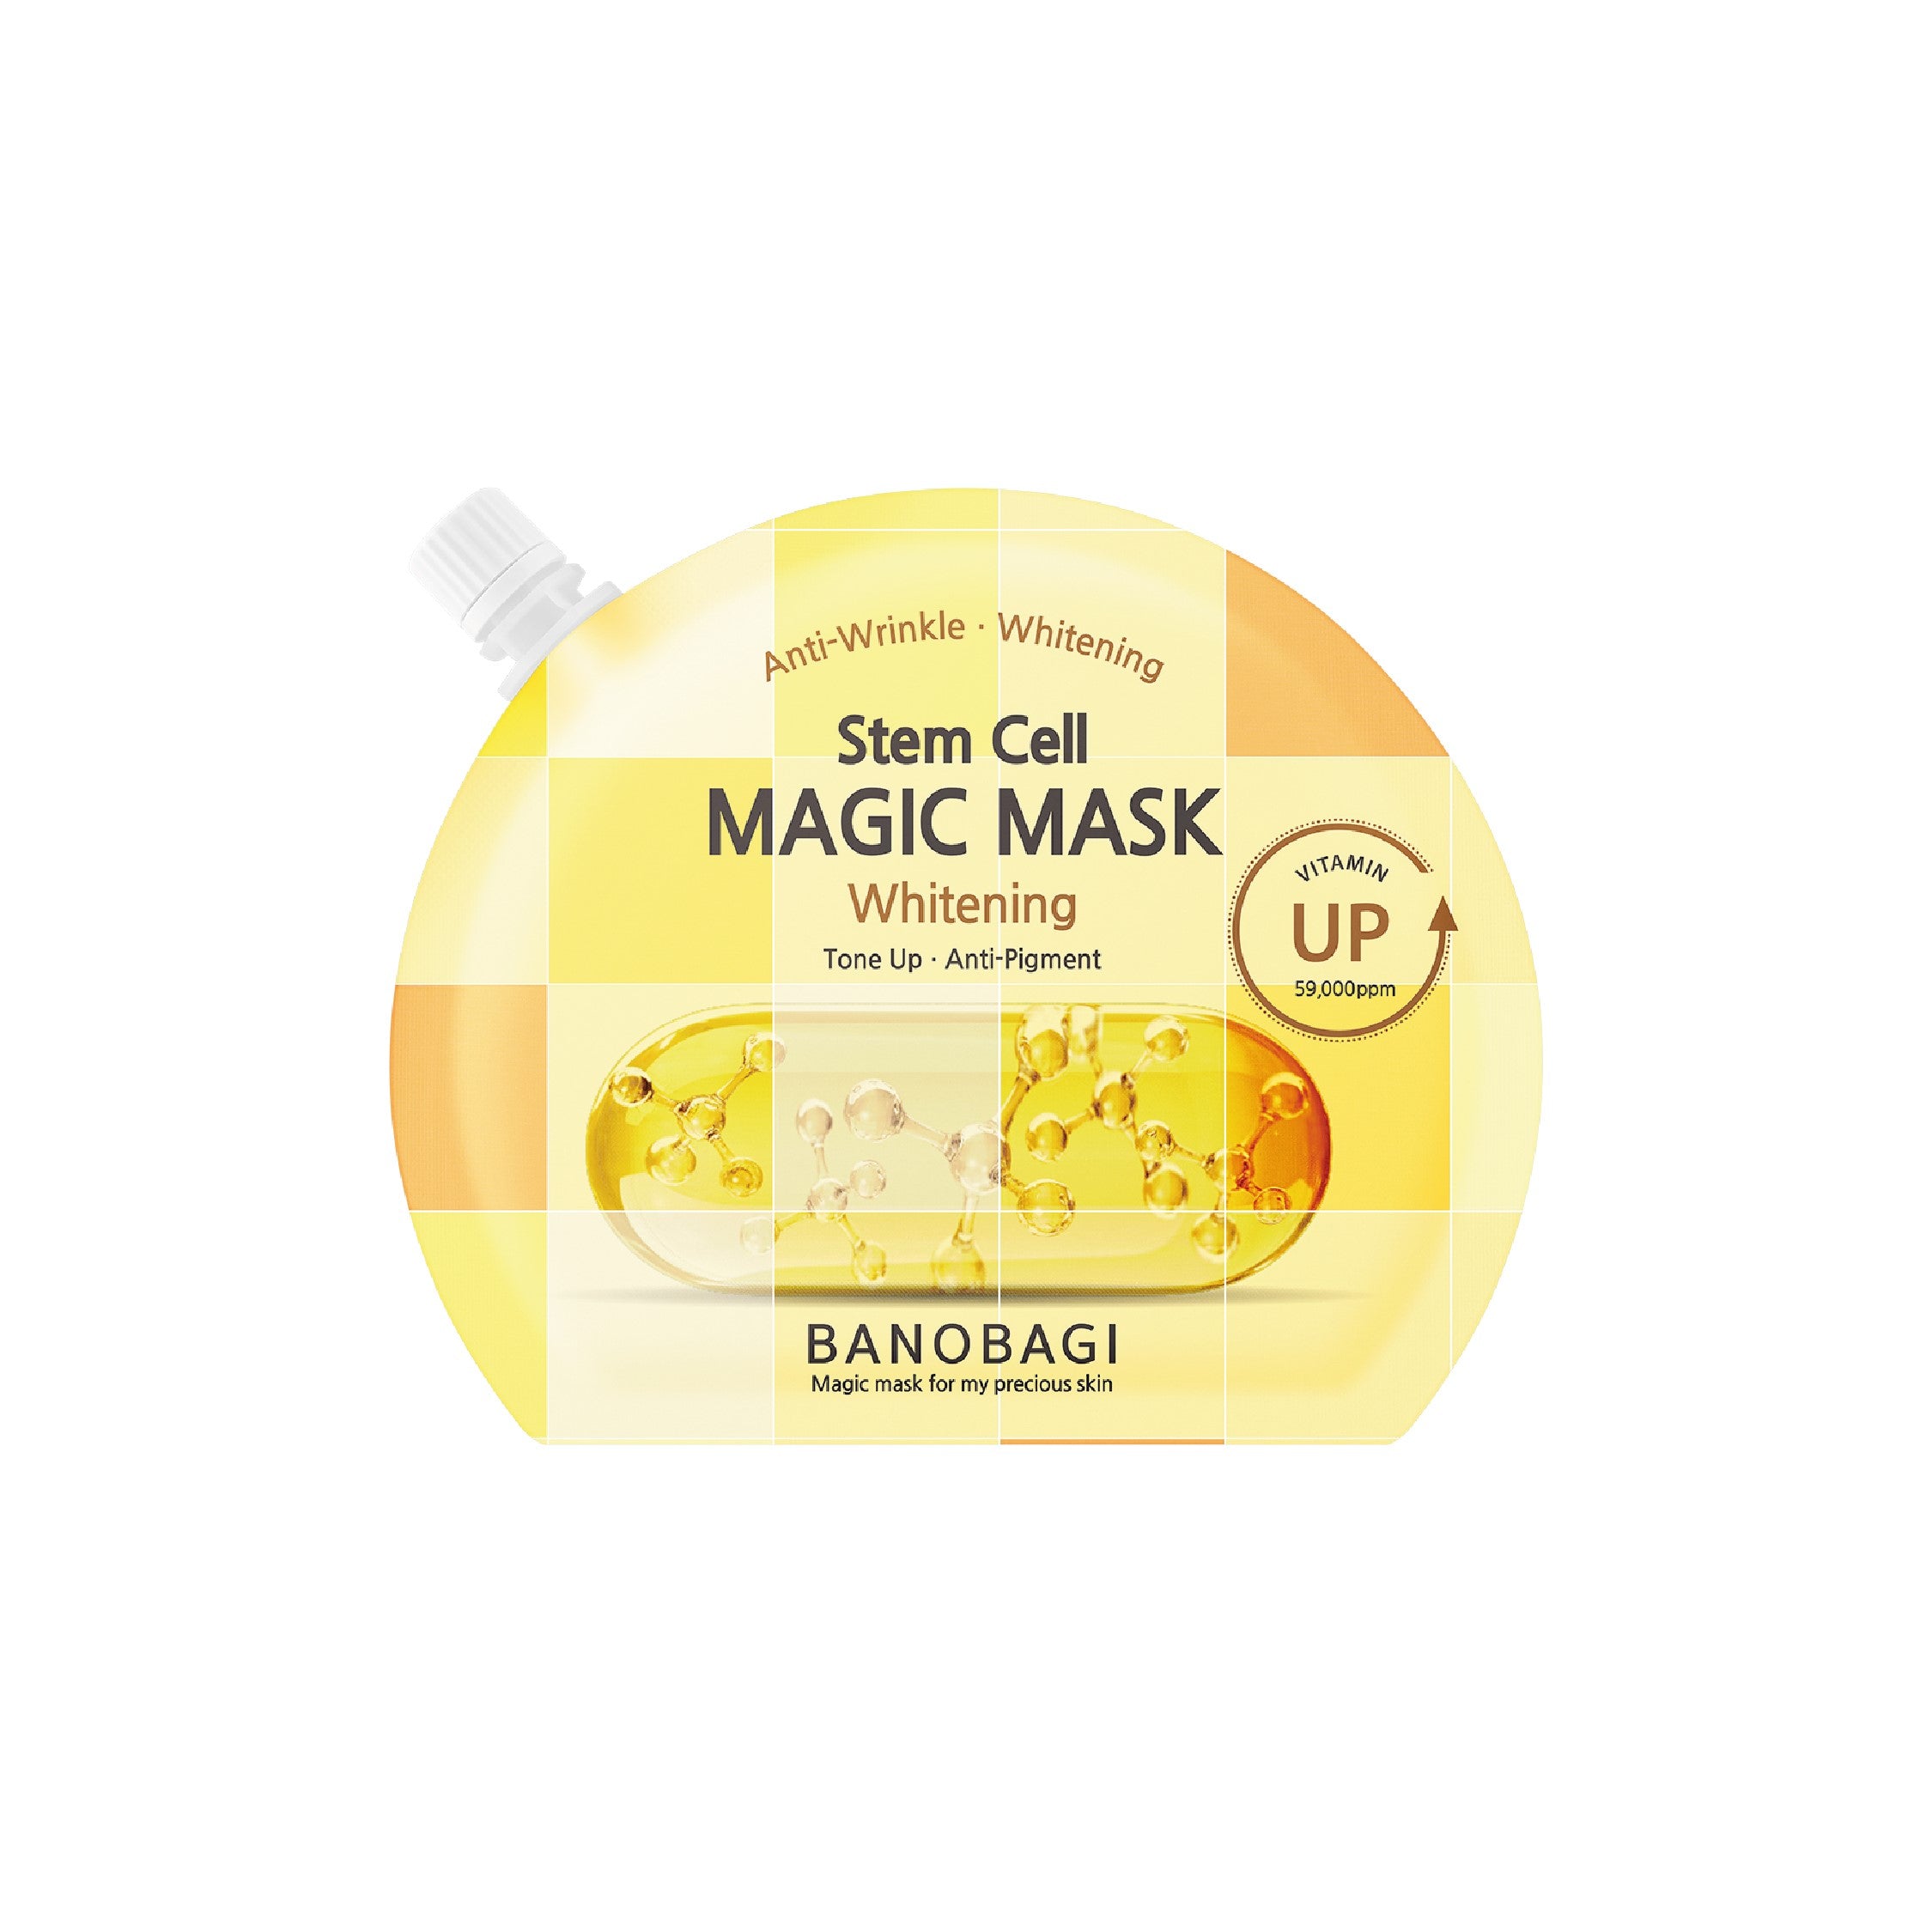 Stem Cell Magic Mask - Whitening